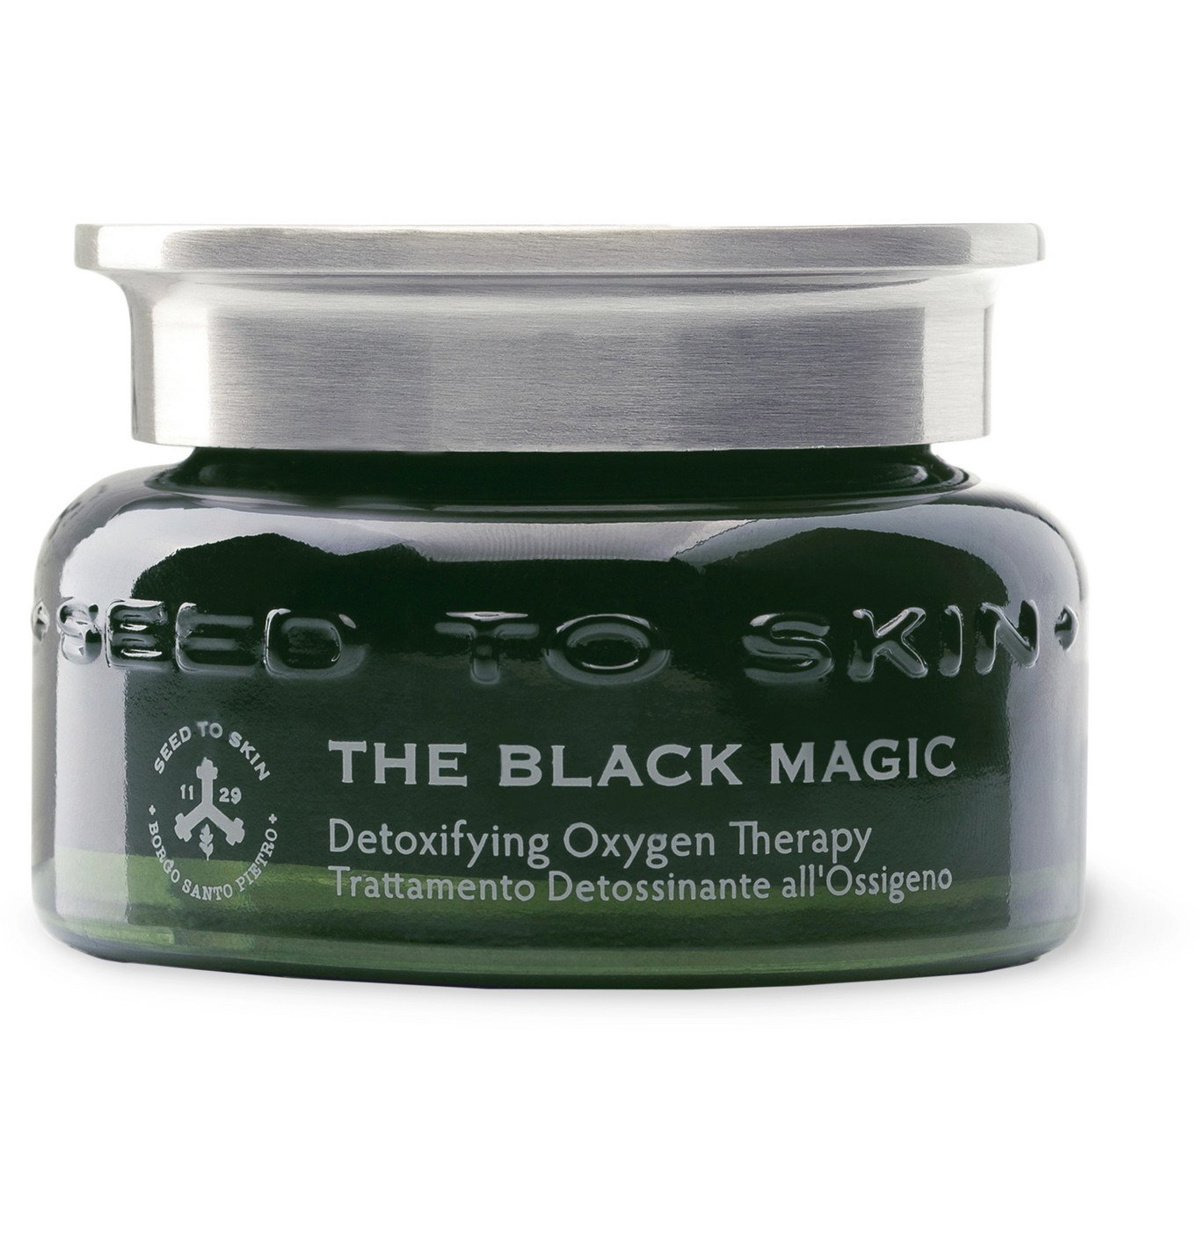 at føre nedsænket Sammenlignelig Seed to Skin - The Black Magic Mask, 50ml - Colorless Seed to Skin